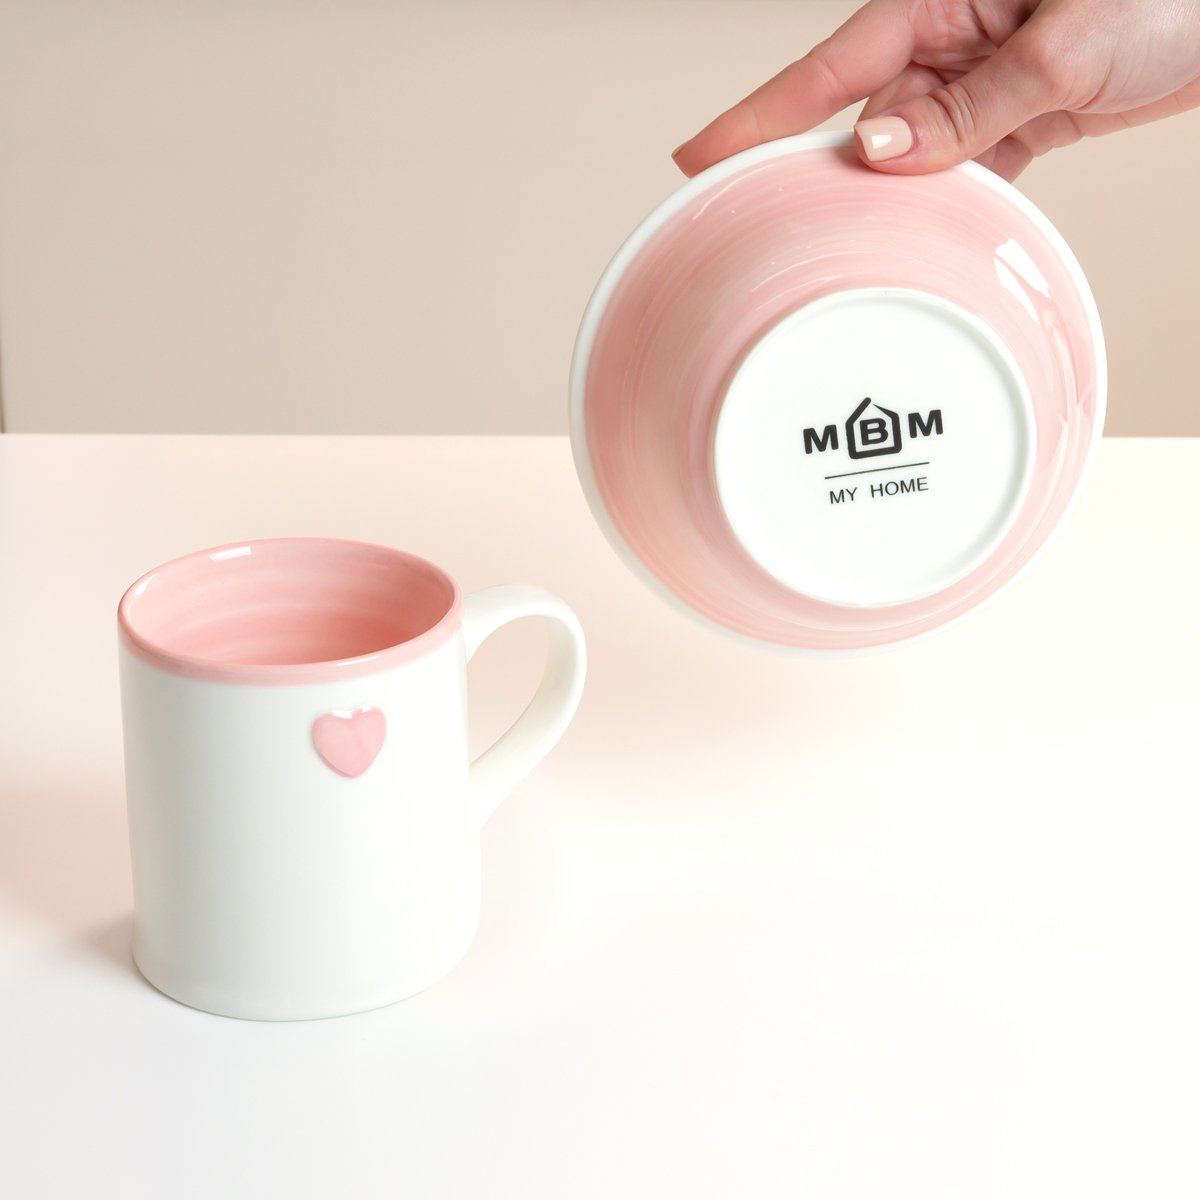 Чашка МВМ My Home, 300 мл, розовая (KP-47 PINK) - фото 5